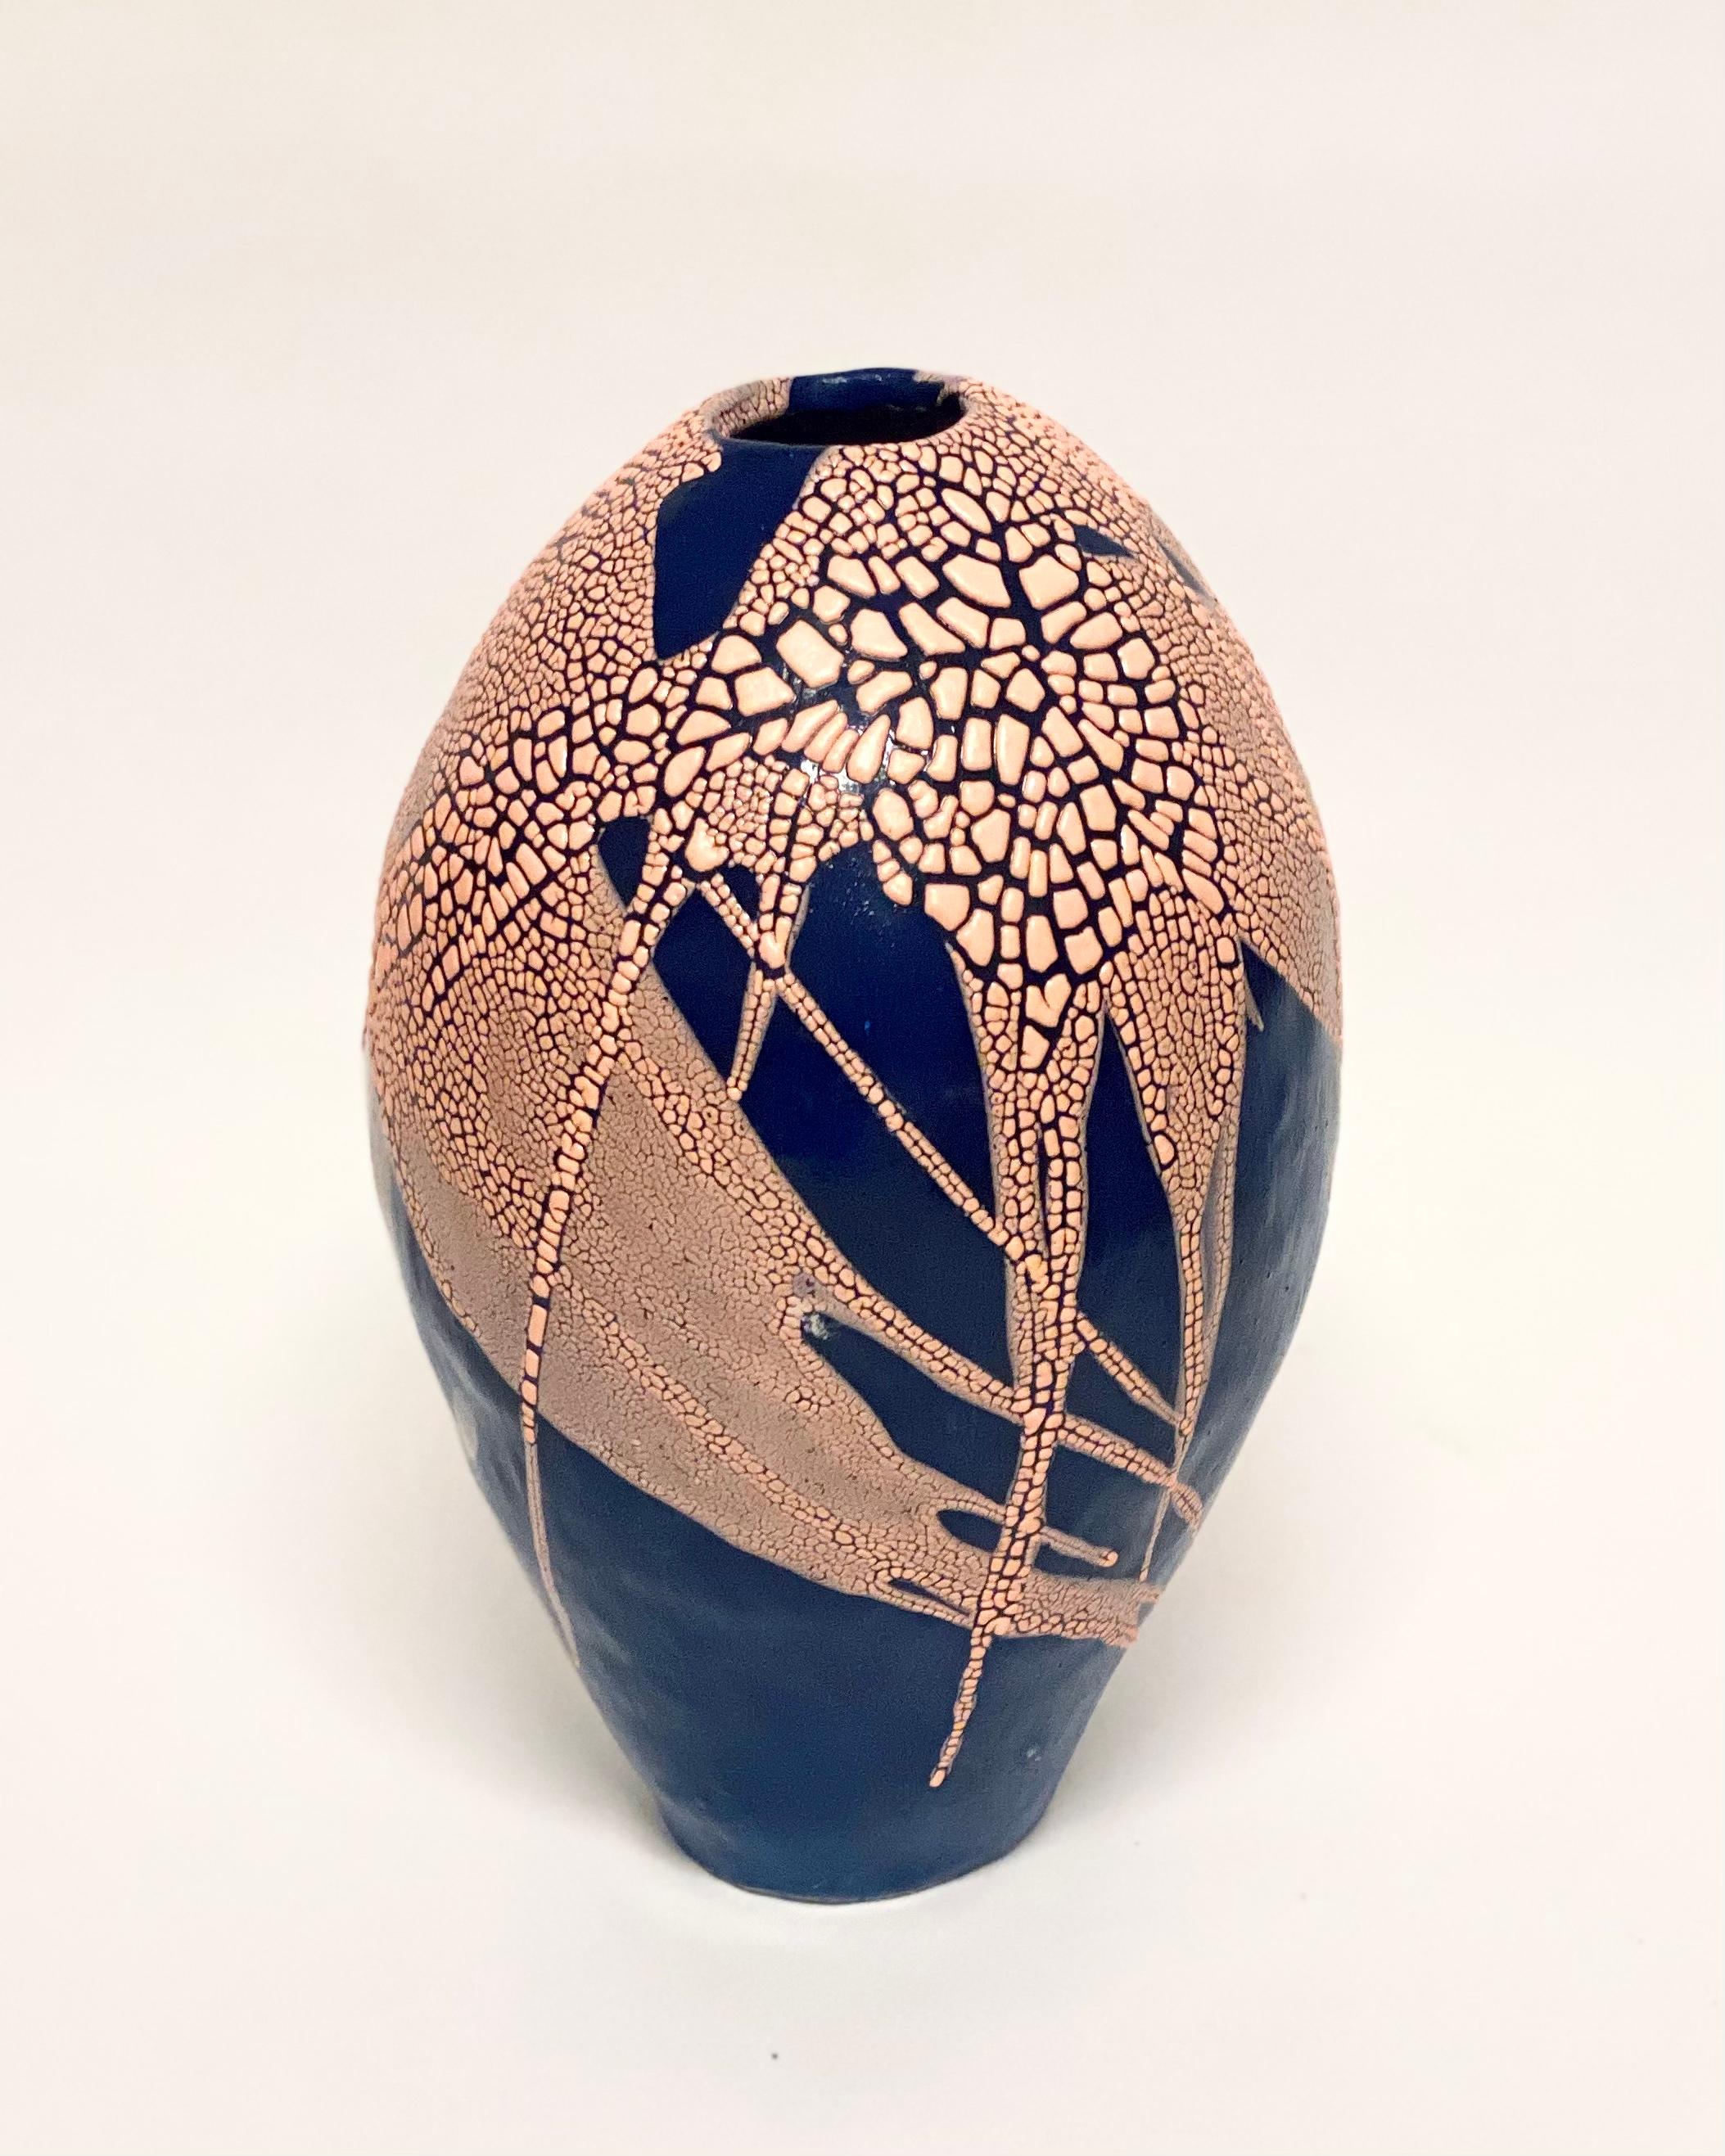 Swedish Blue/Blue Dragon Egg Vase by Astrid Öhman For Sale